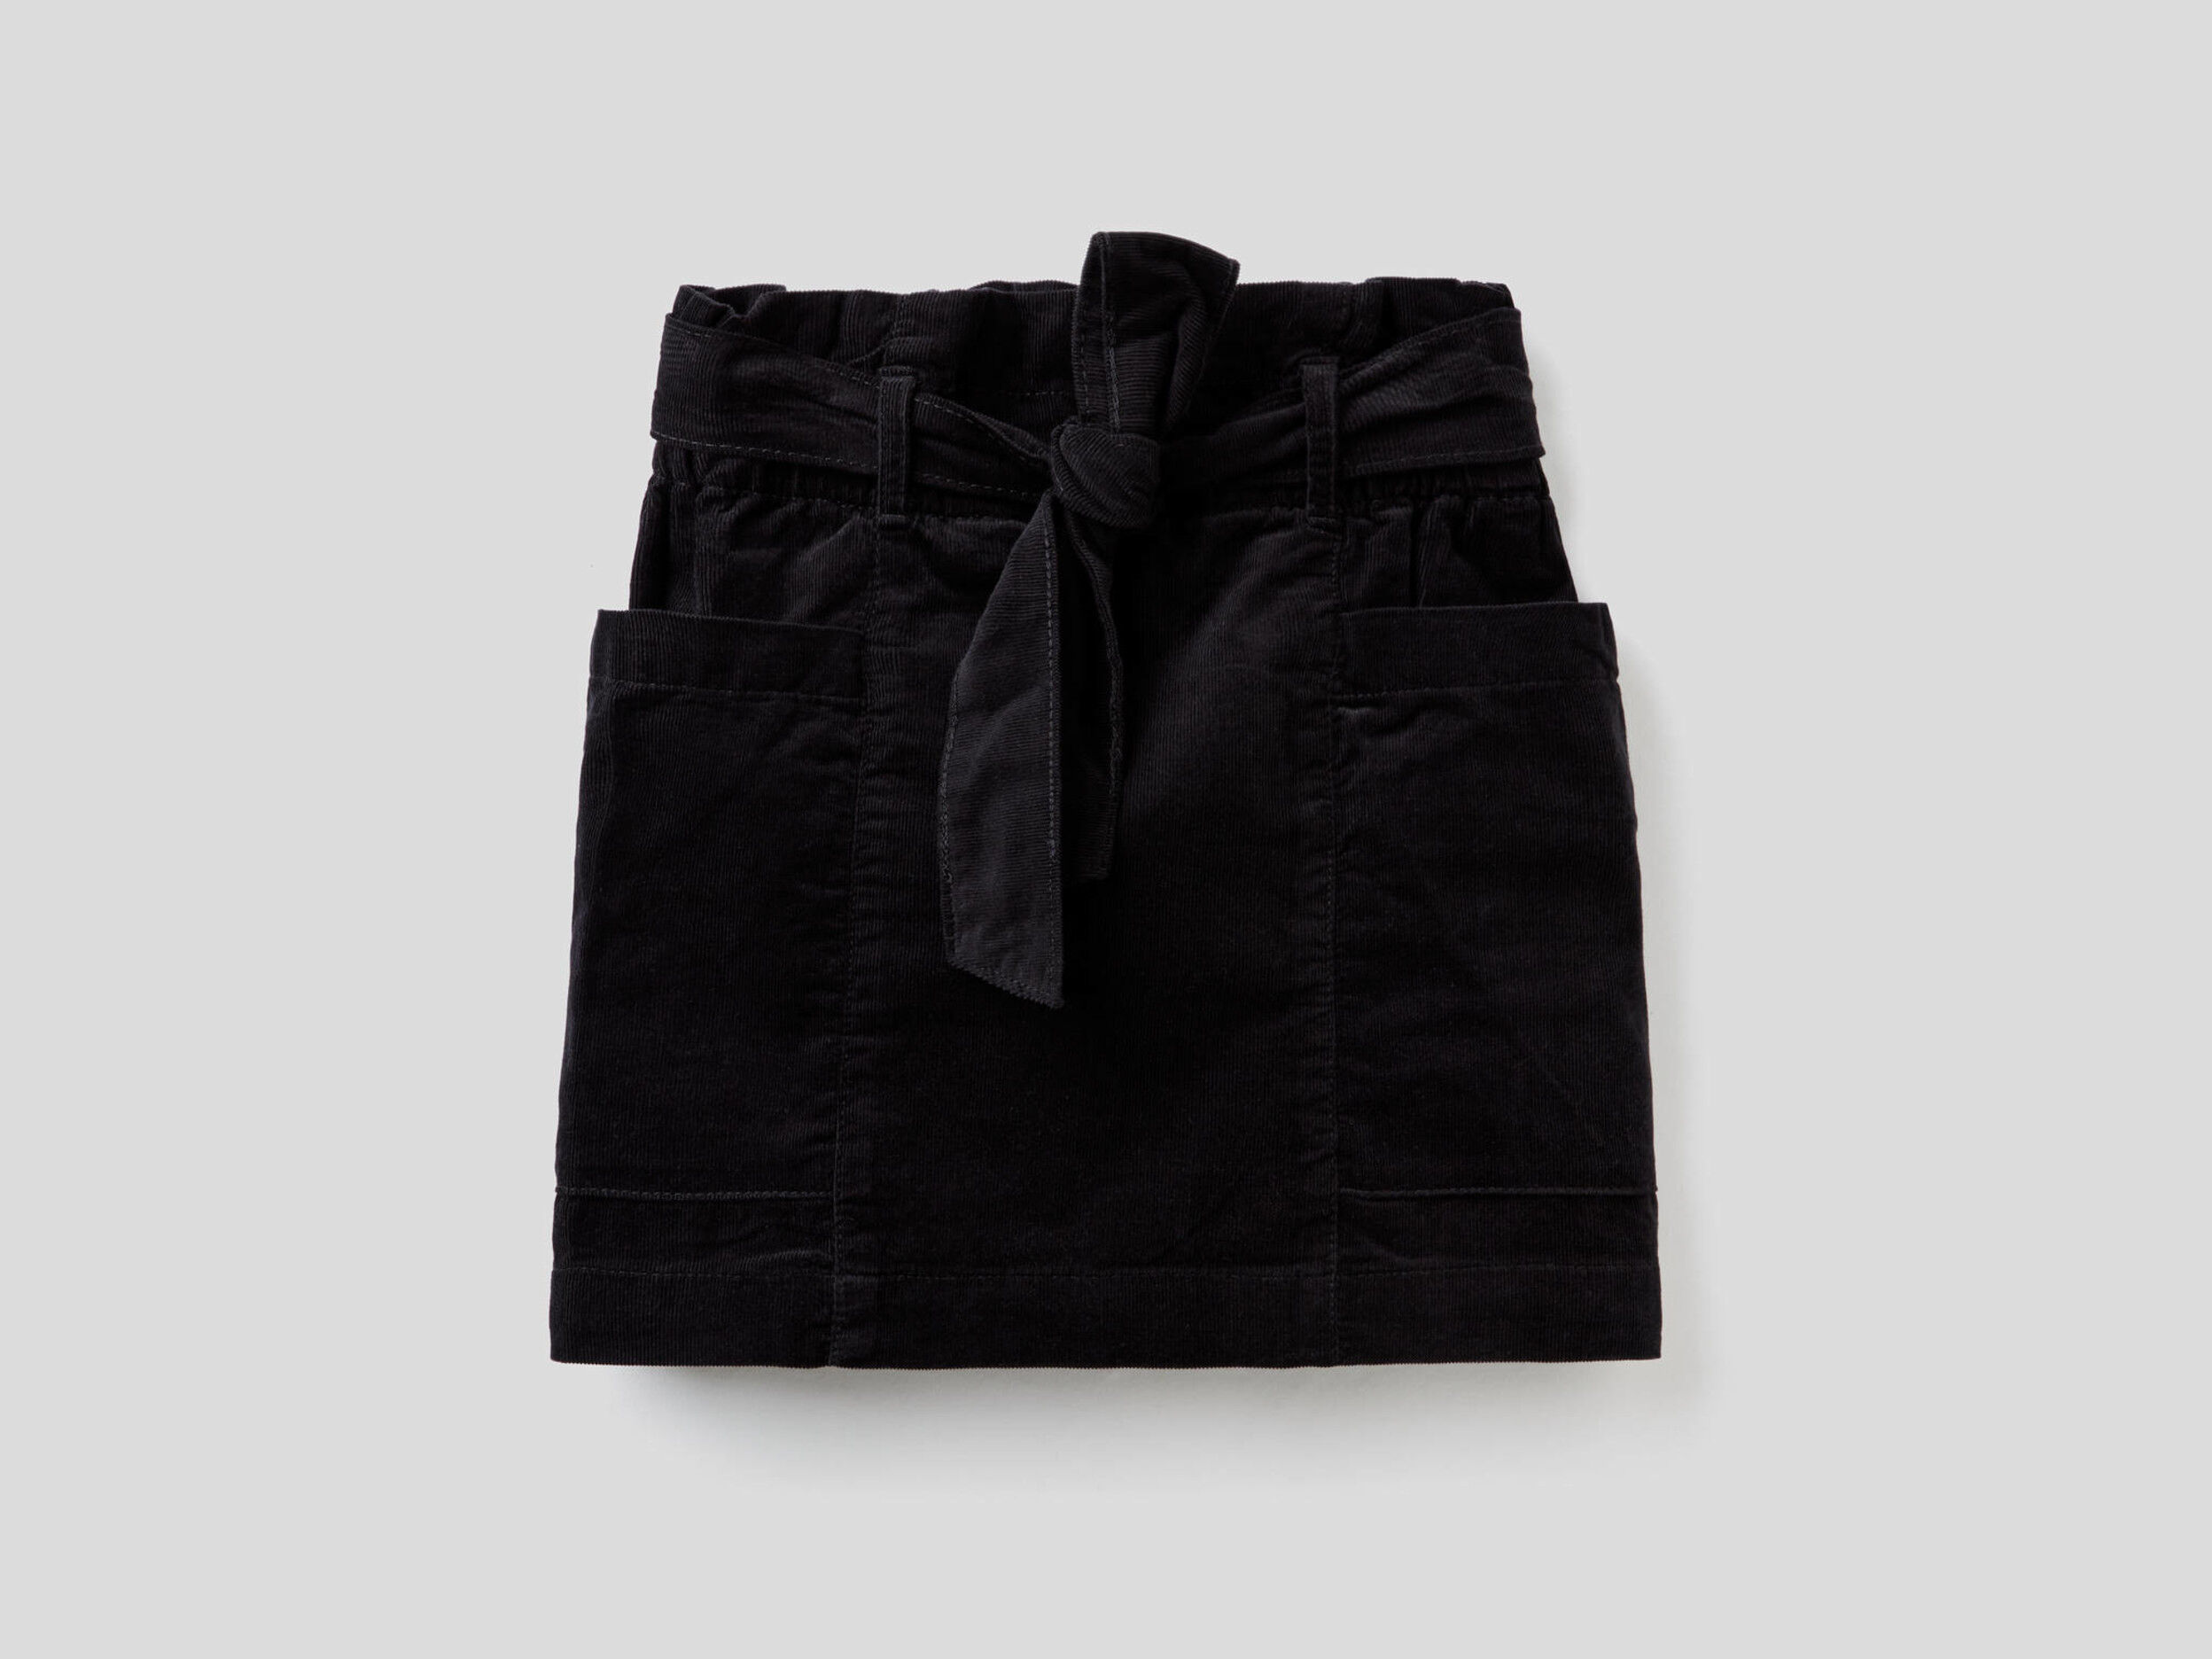 velvet skirt with pockets